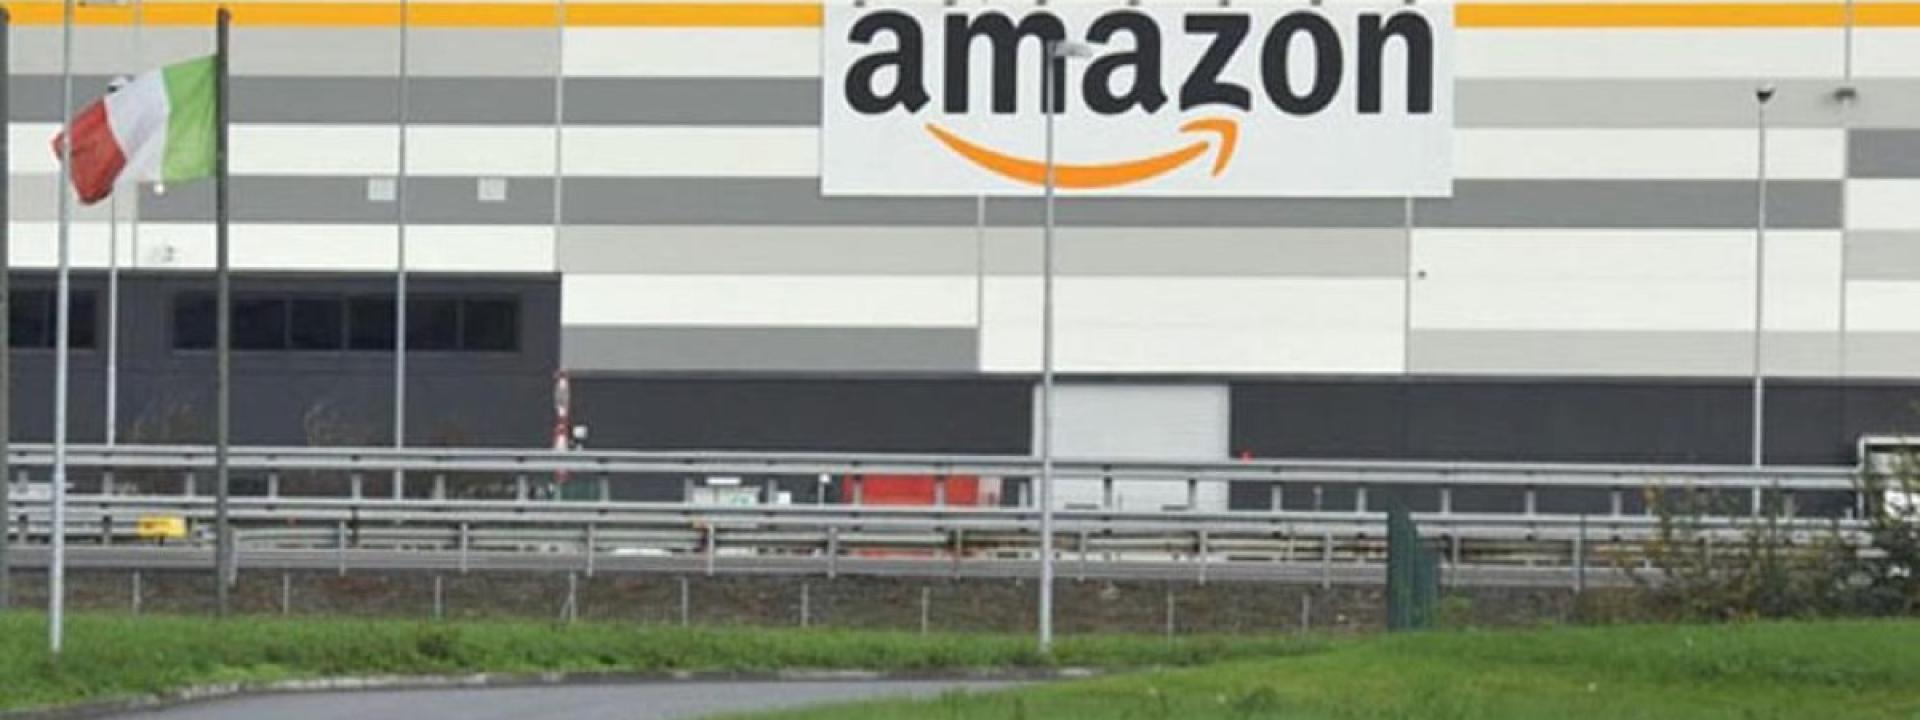 Marche - Il nuovo polo logistico Amazon è realtà: 